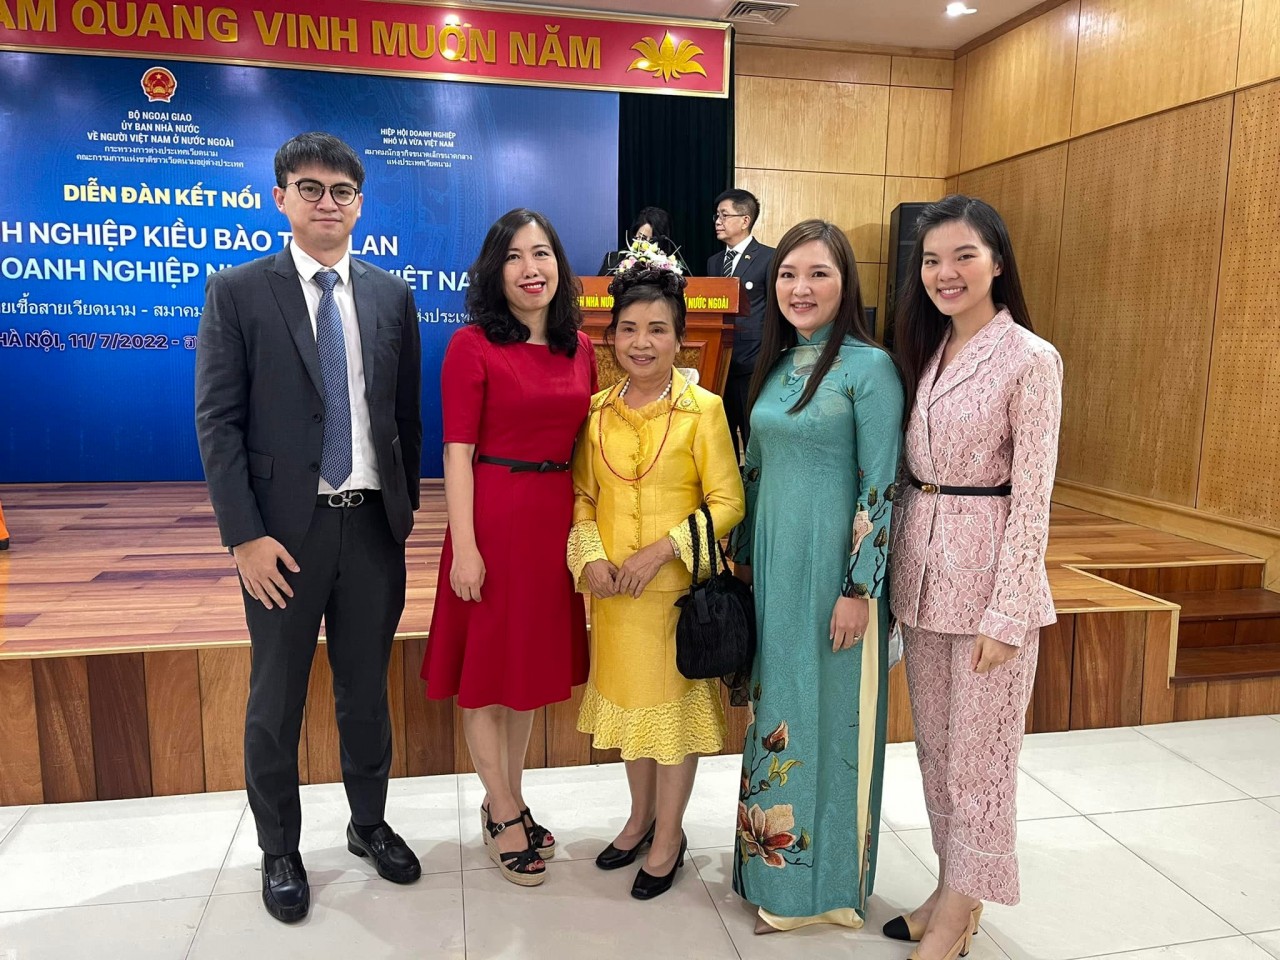 Kiều bào trẻ Thái Lan tự hào khi giới thiệu mình là người gốc Việt